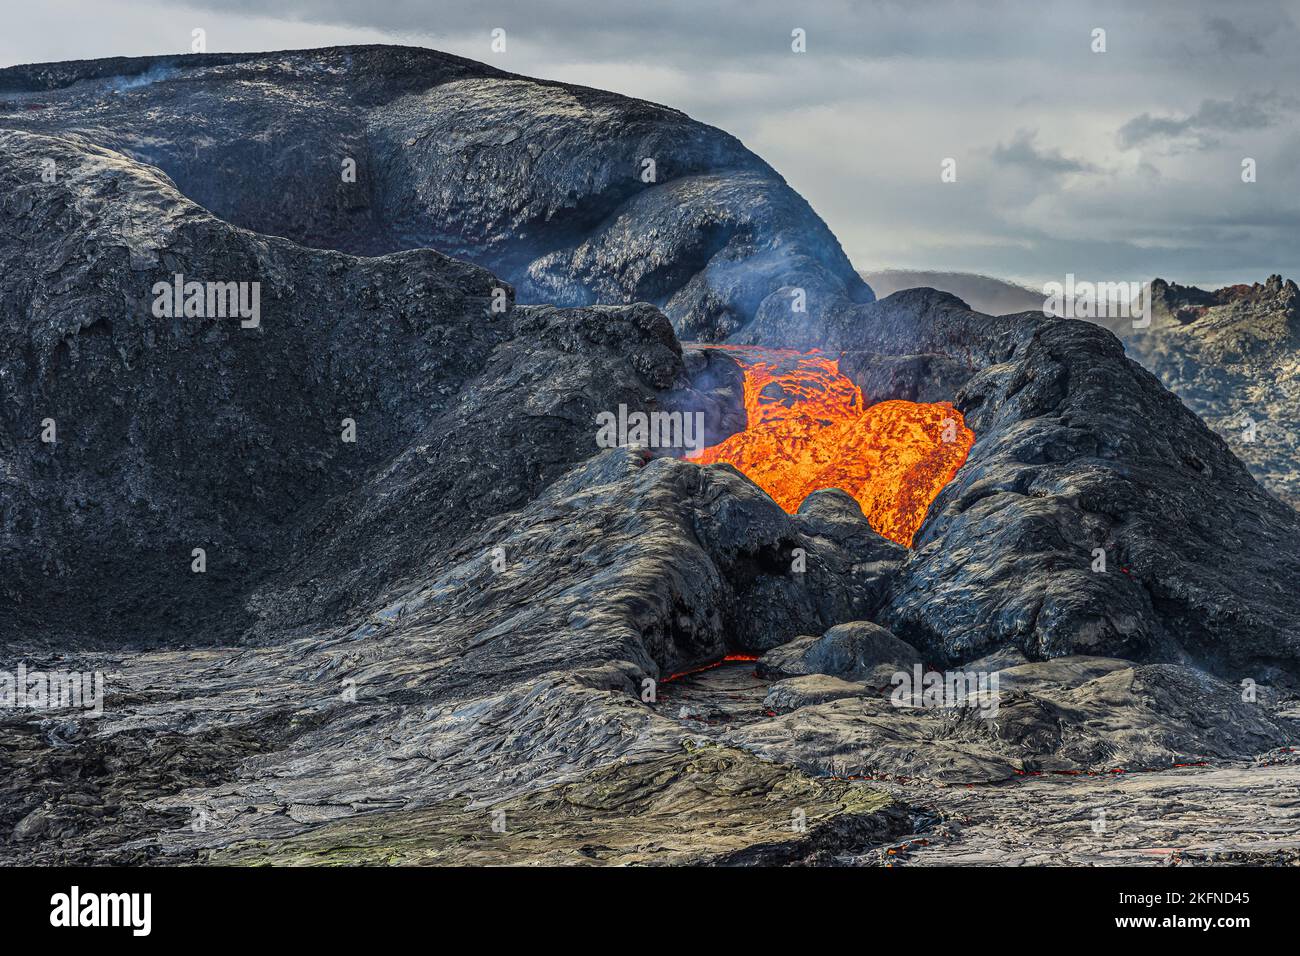 burbujeante flujo de lava de un cráter volcánico activo. Paisaje en Islandia en la península de Reykjanes. Cráter con roca magma refrigerada y líquida. nubes Foto de stock